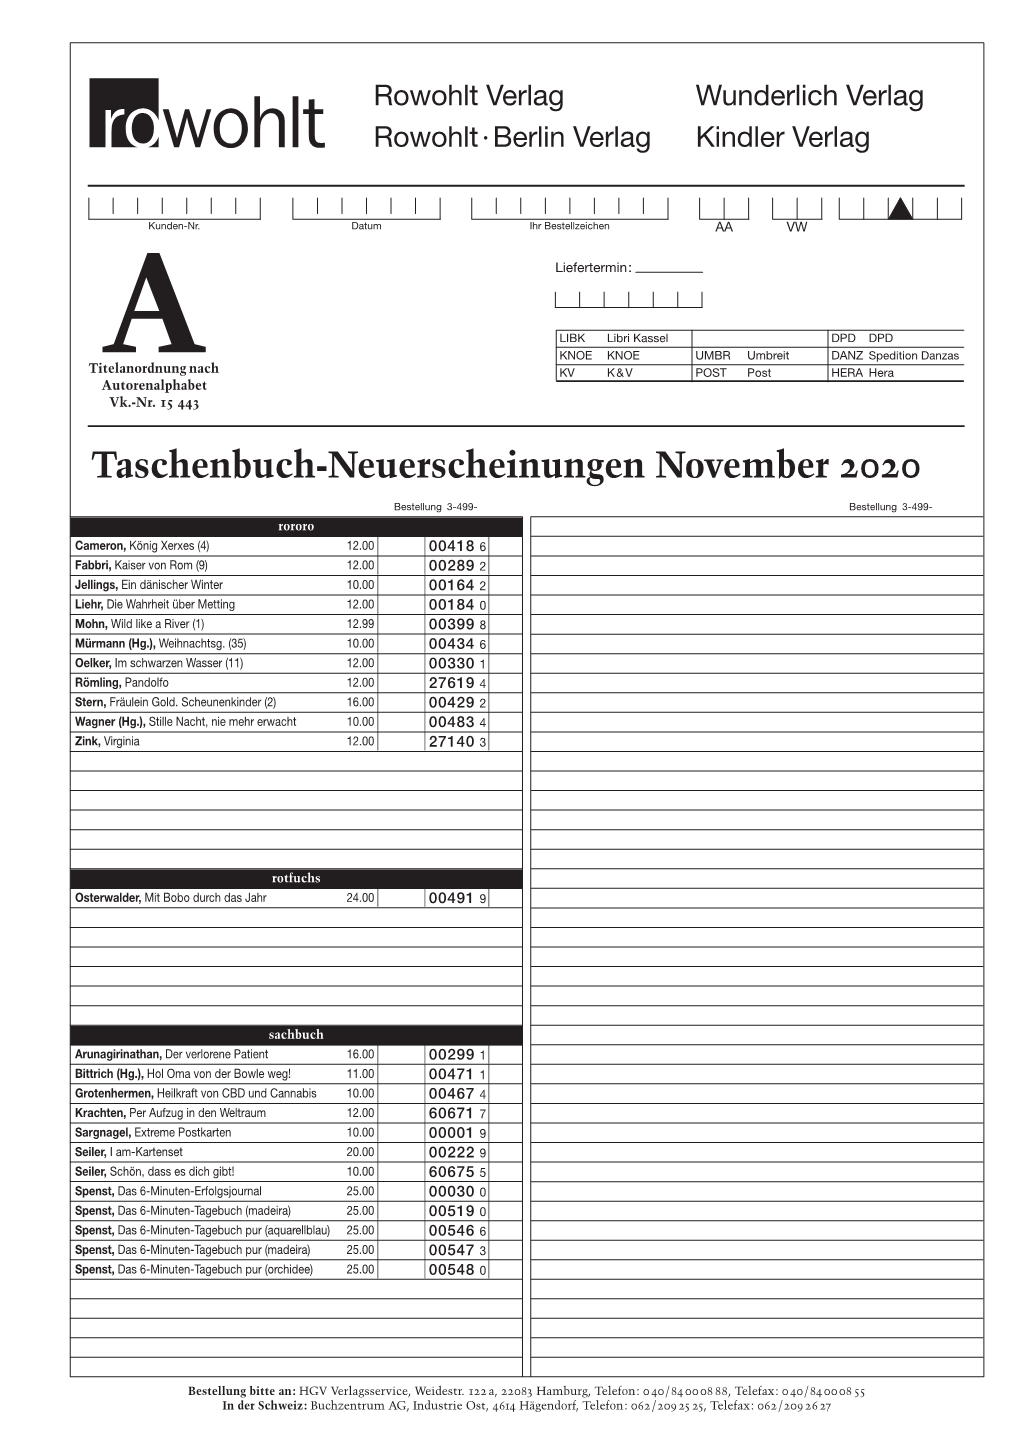 Taschenbuch-Neuerscheinungen November 2020